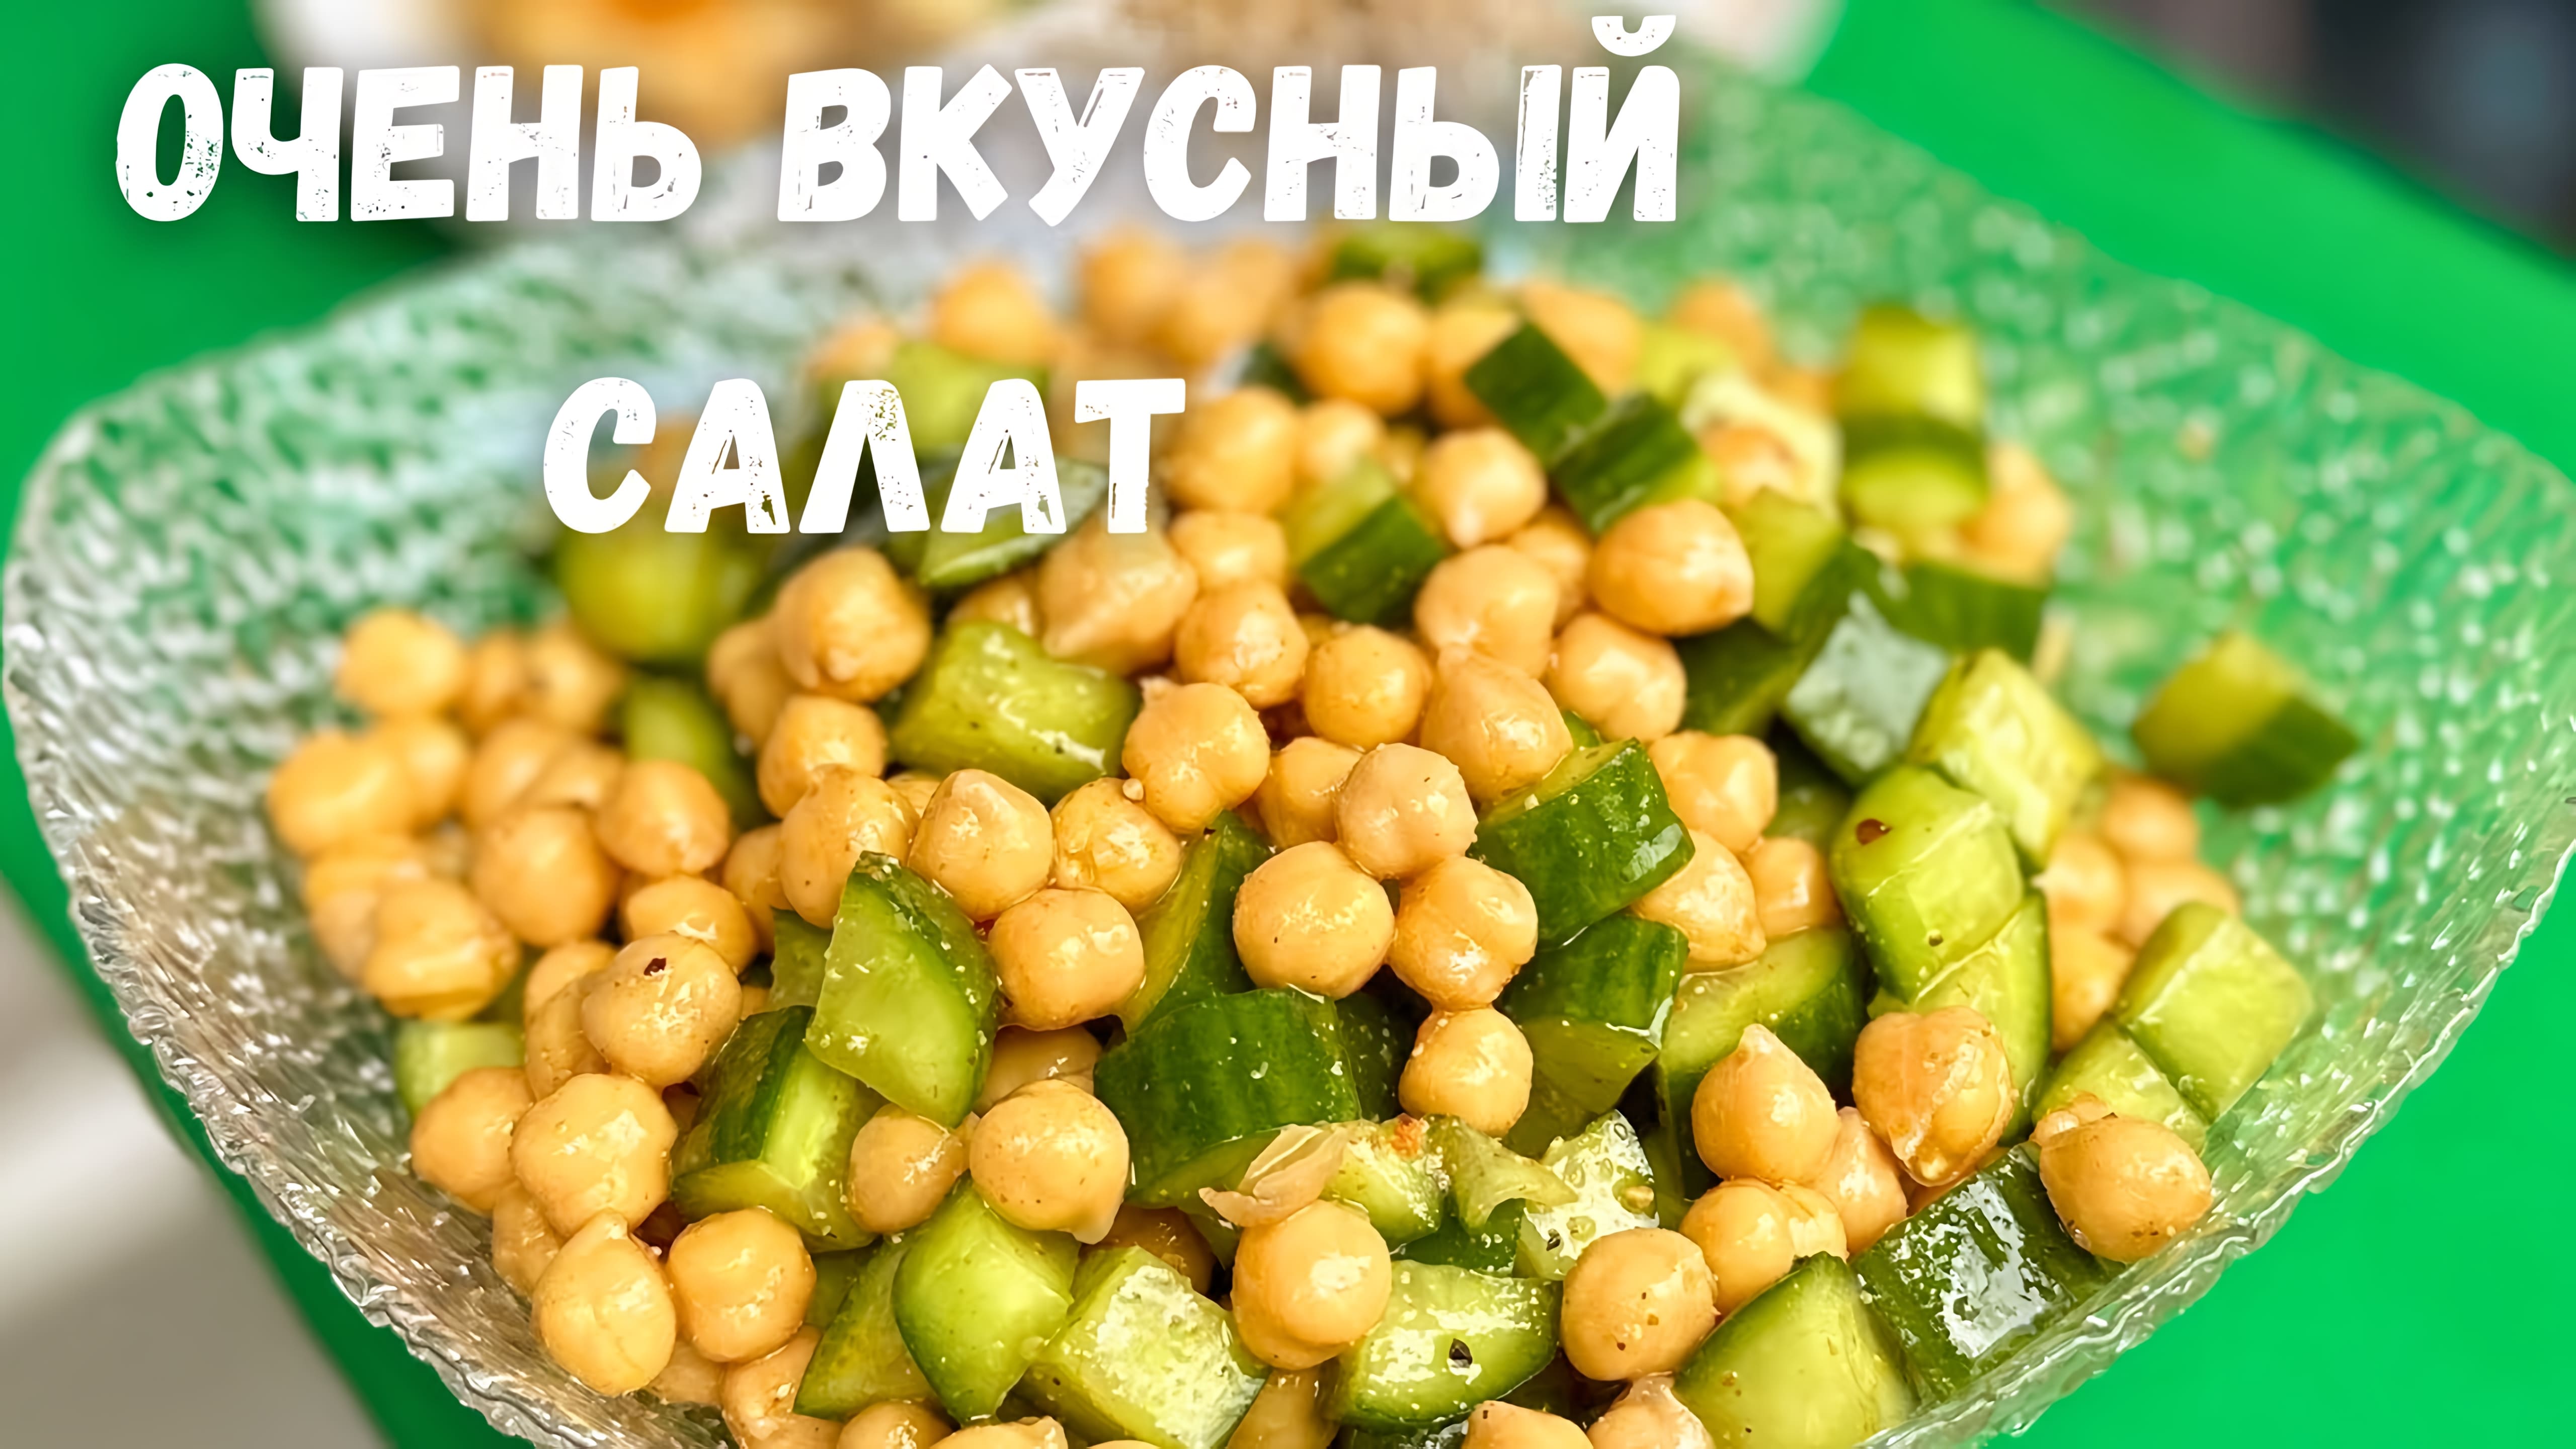 Видео: Простой и Вкусный Салат из Огурцов за 5 минут. Салат Покоряет сразу. Очень необычно и Вкусно!!!